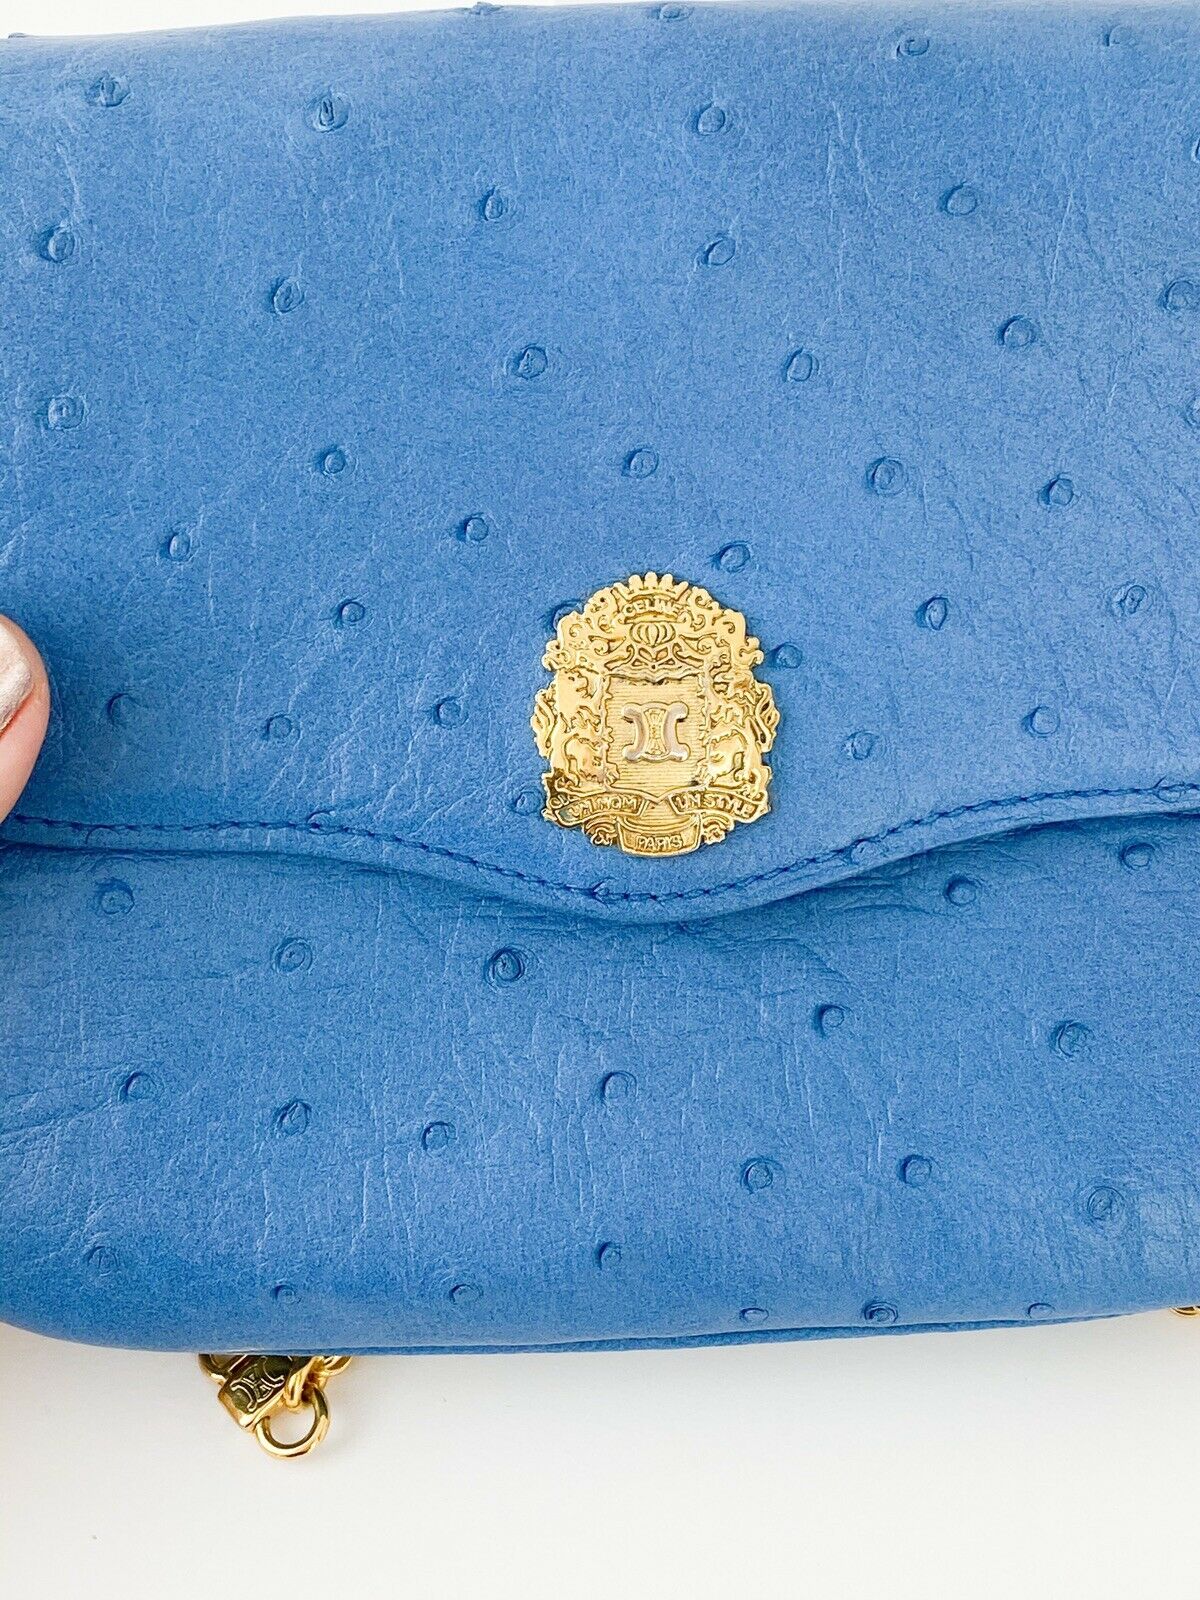 CELINE Vintage Ostrich Leather Blue Gold Chain Shoulder Bag Made in France